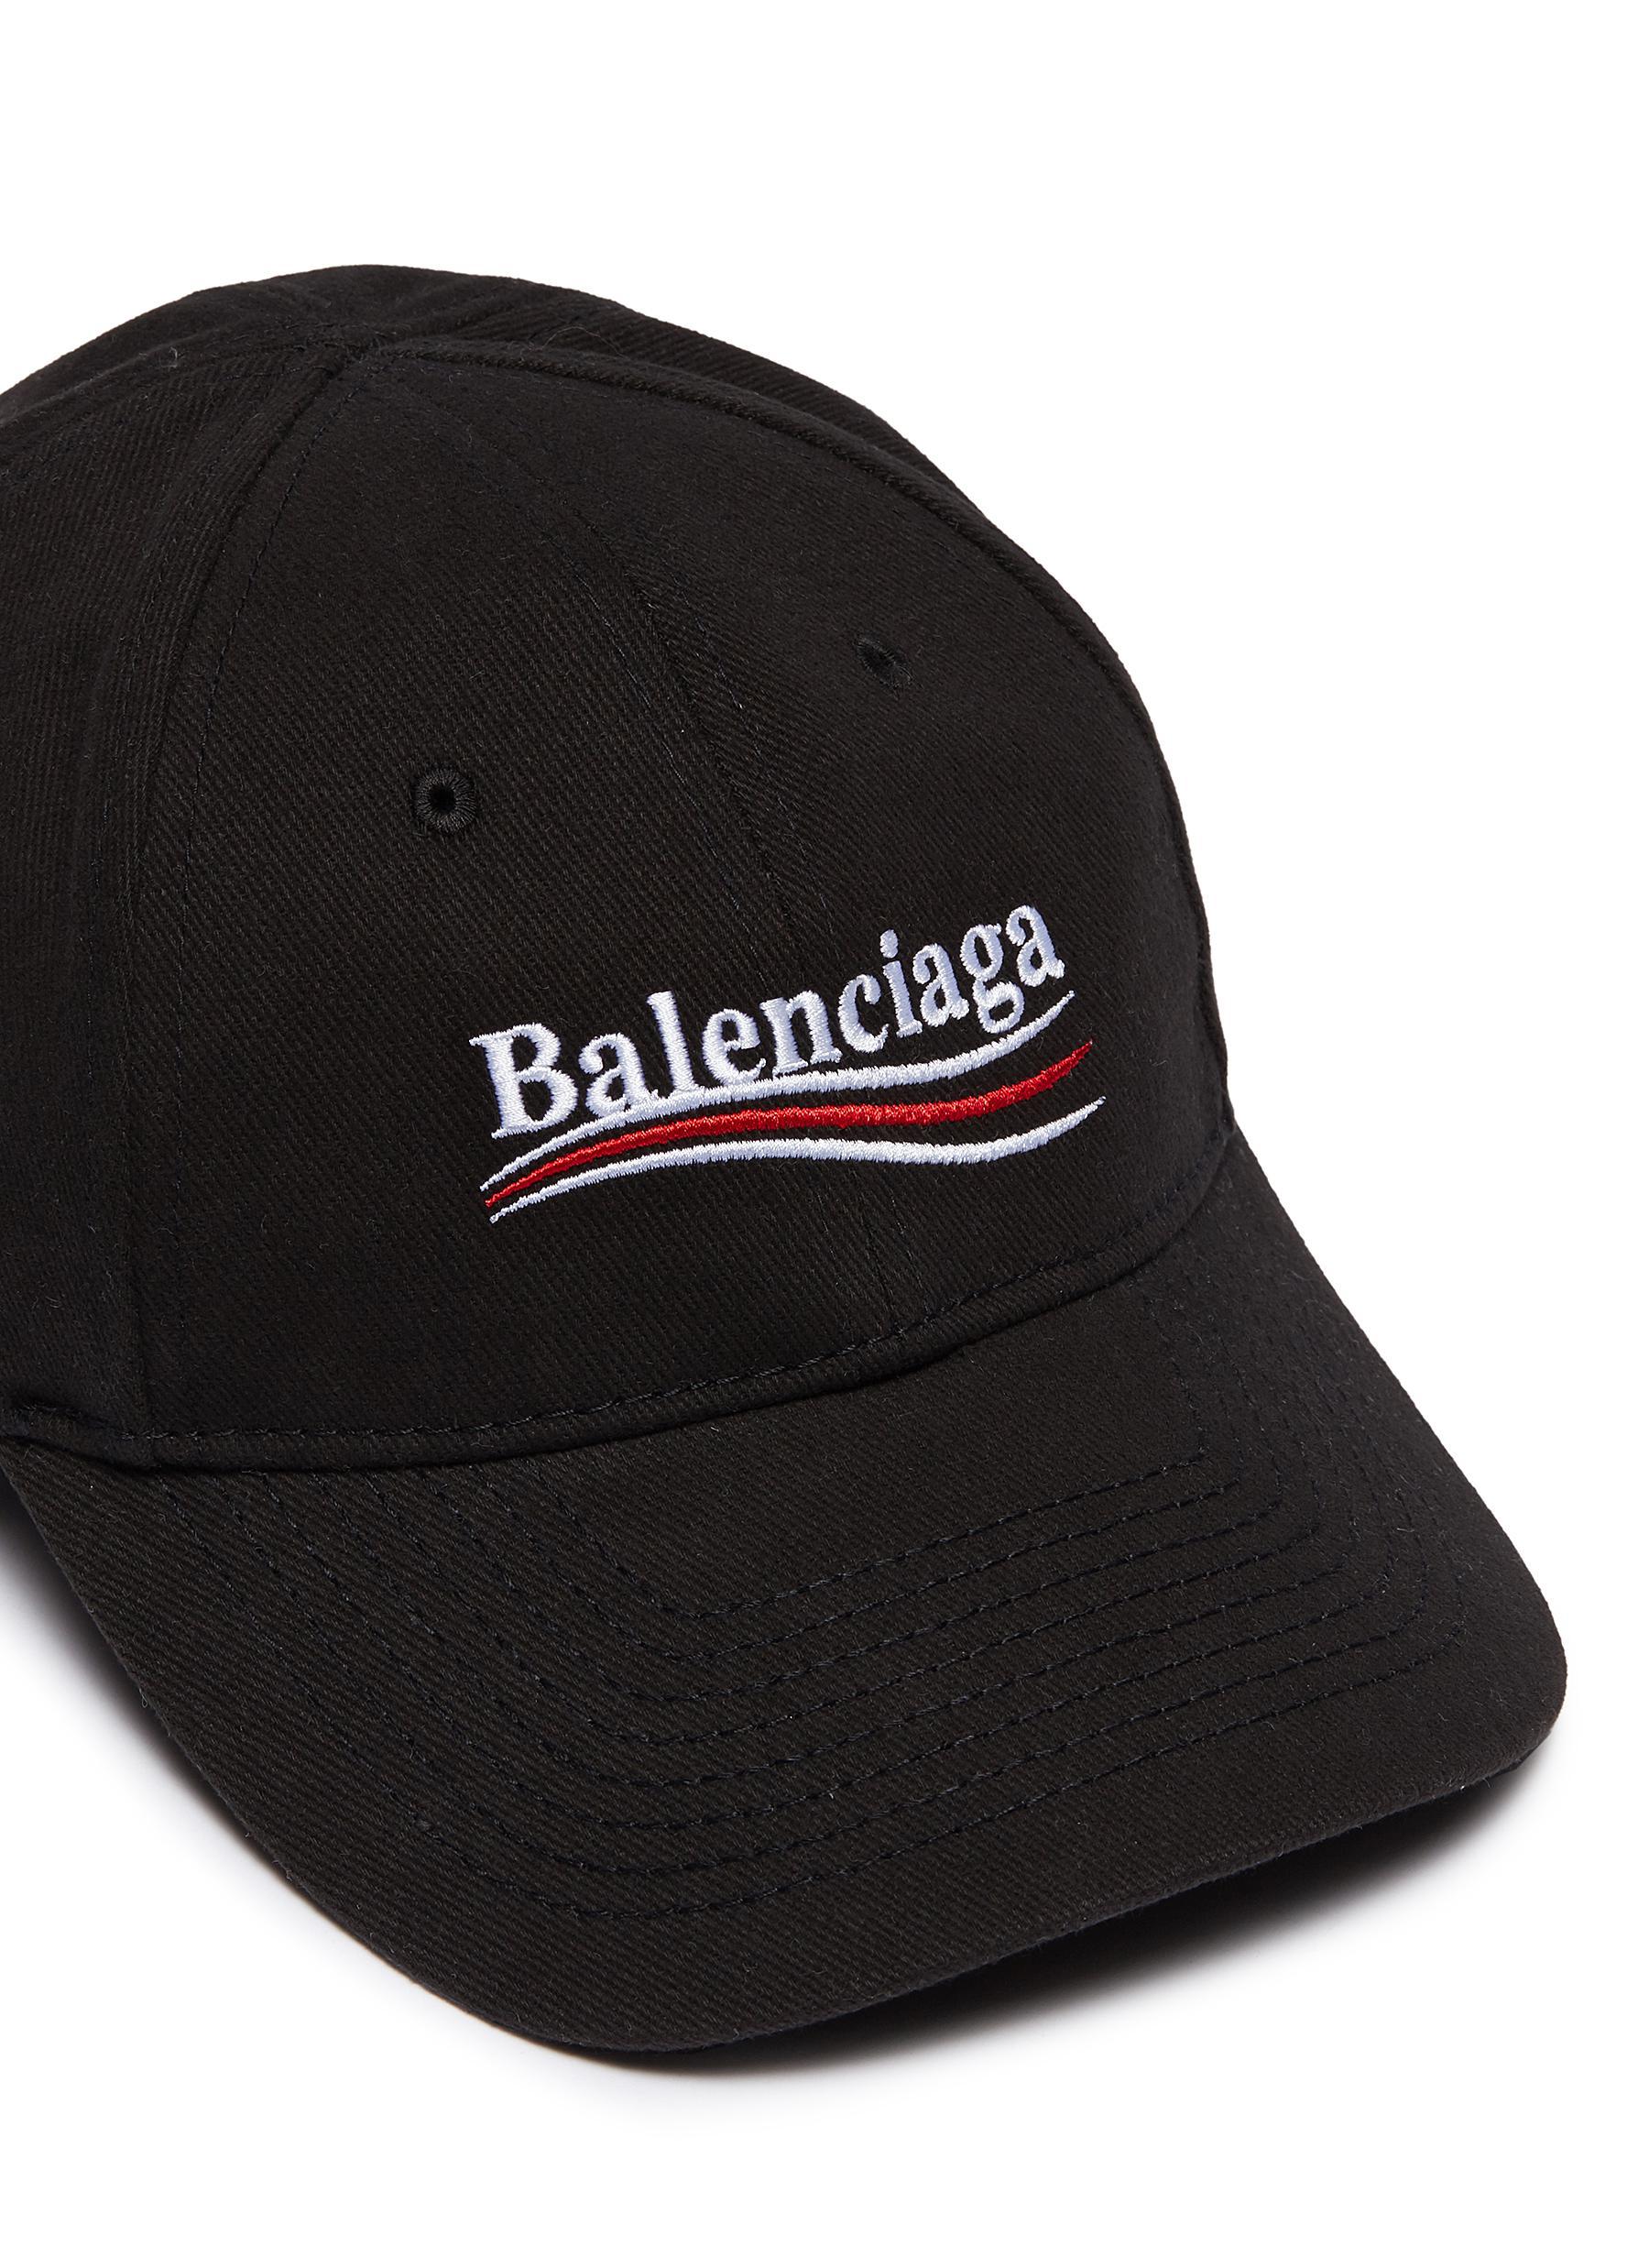 Balenciaga Cotton New Political Logo Baseball Cap in Black/White 